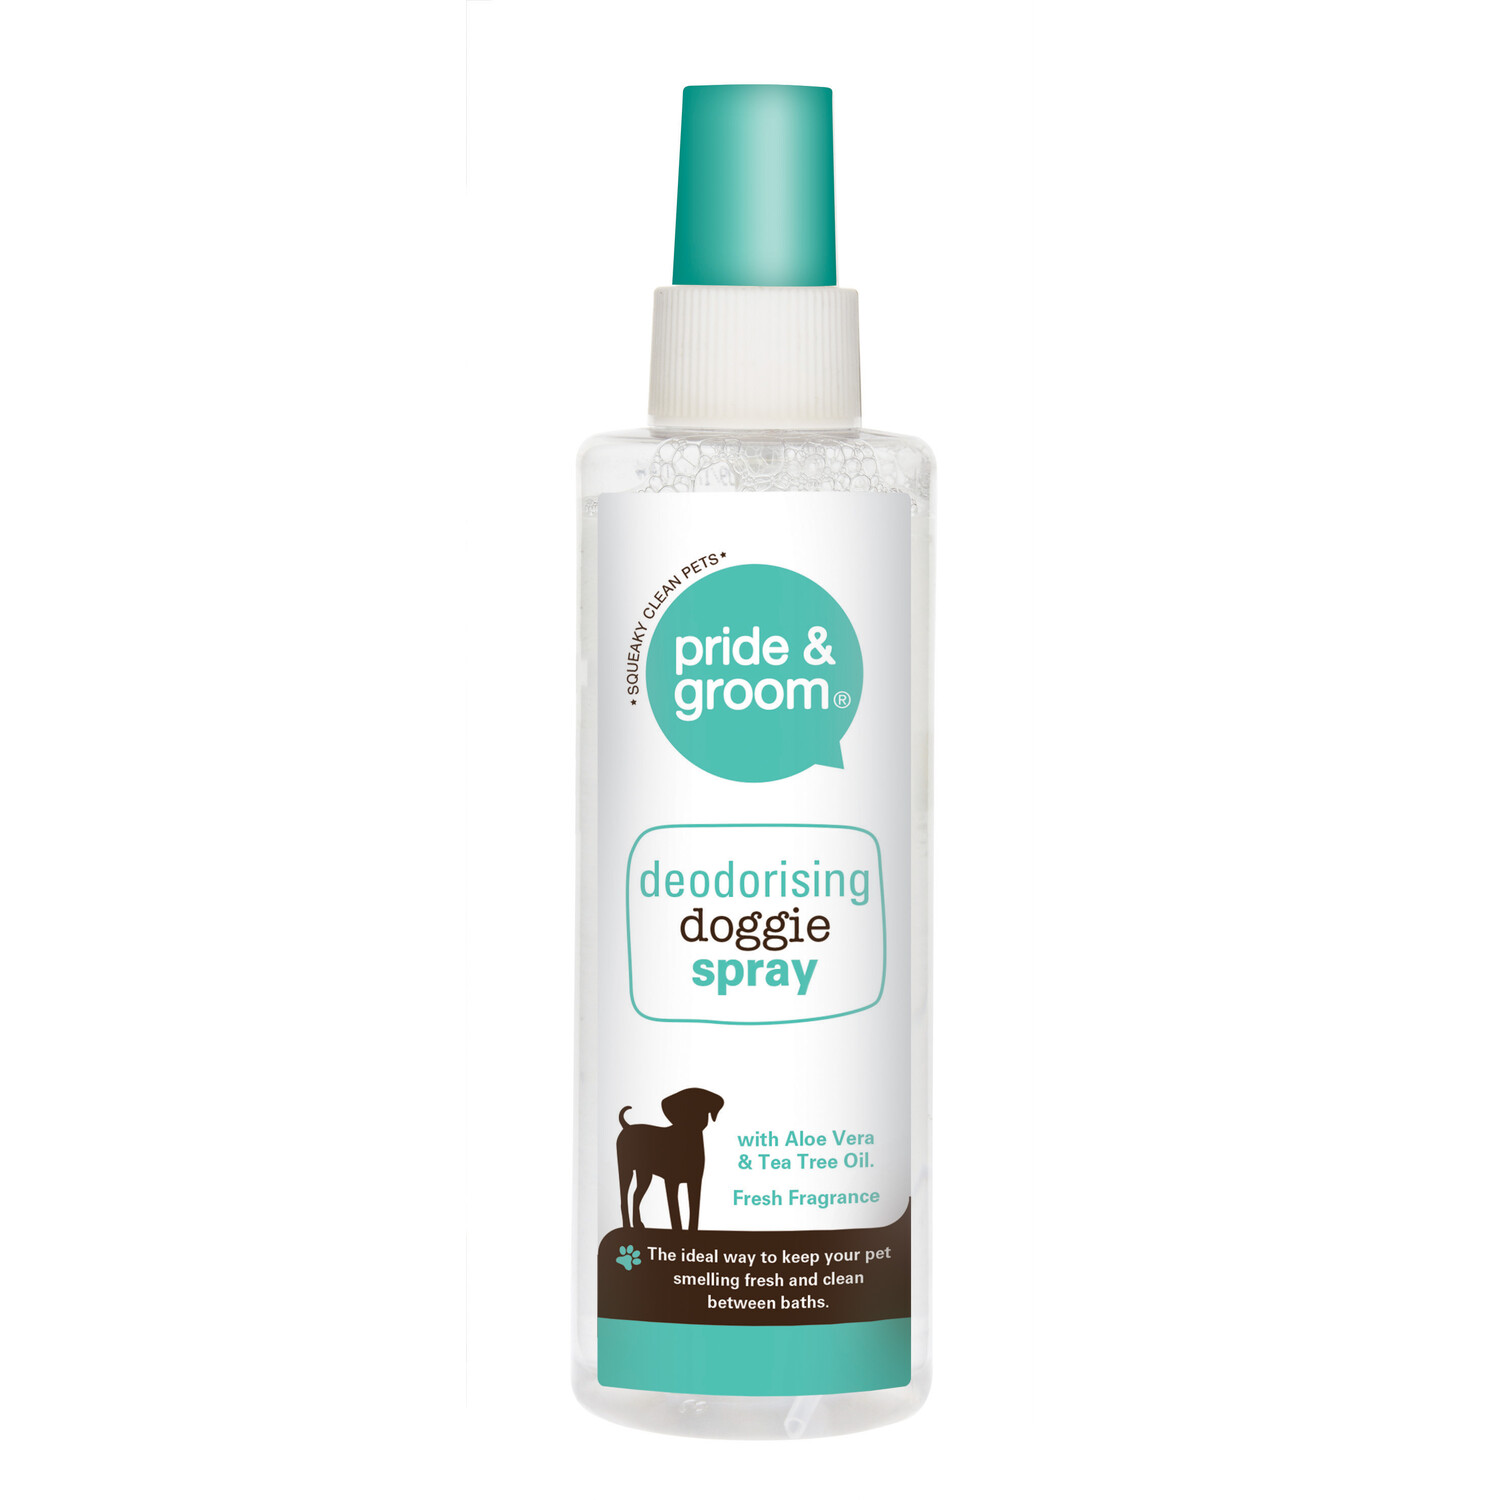 Pride & Groom Deodorising Doggie Spray 200ml Image